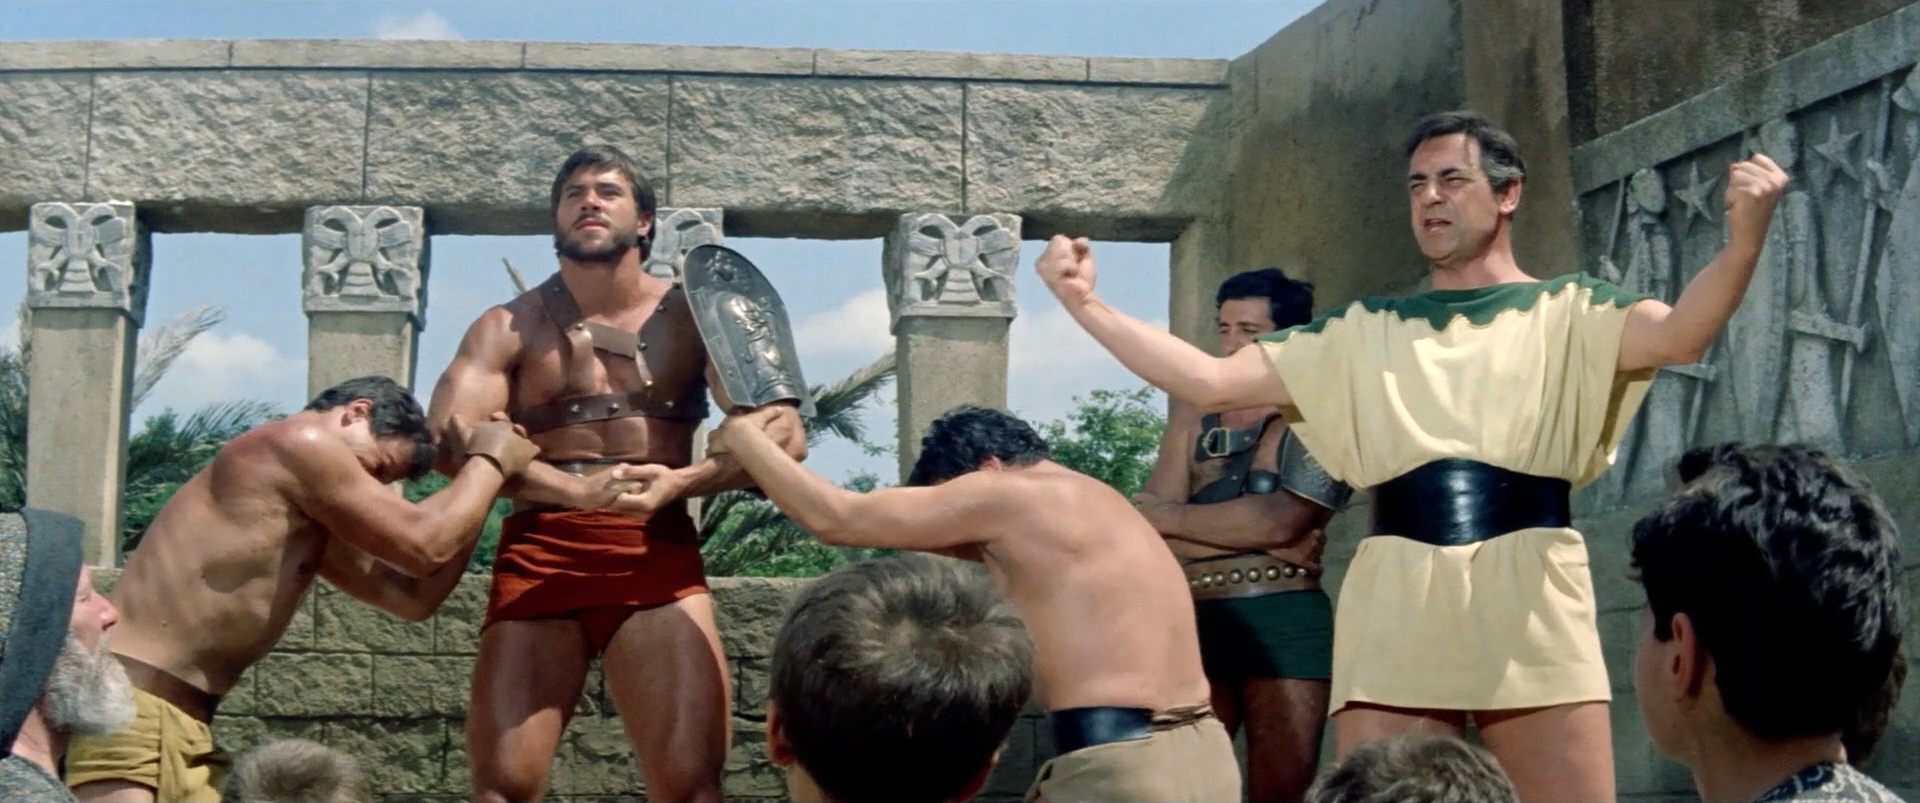 El gladiador más fuerte del mundo (HD)5.jpg